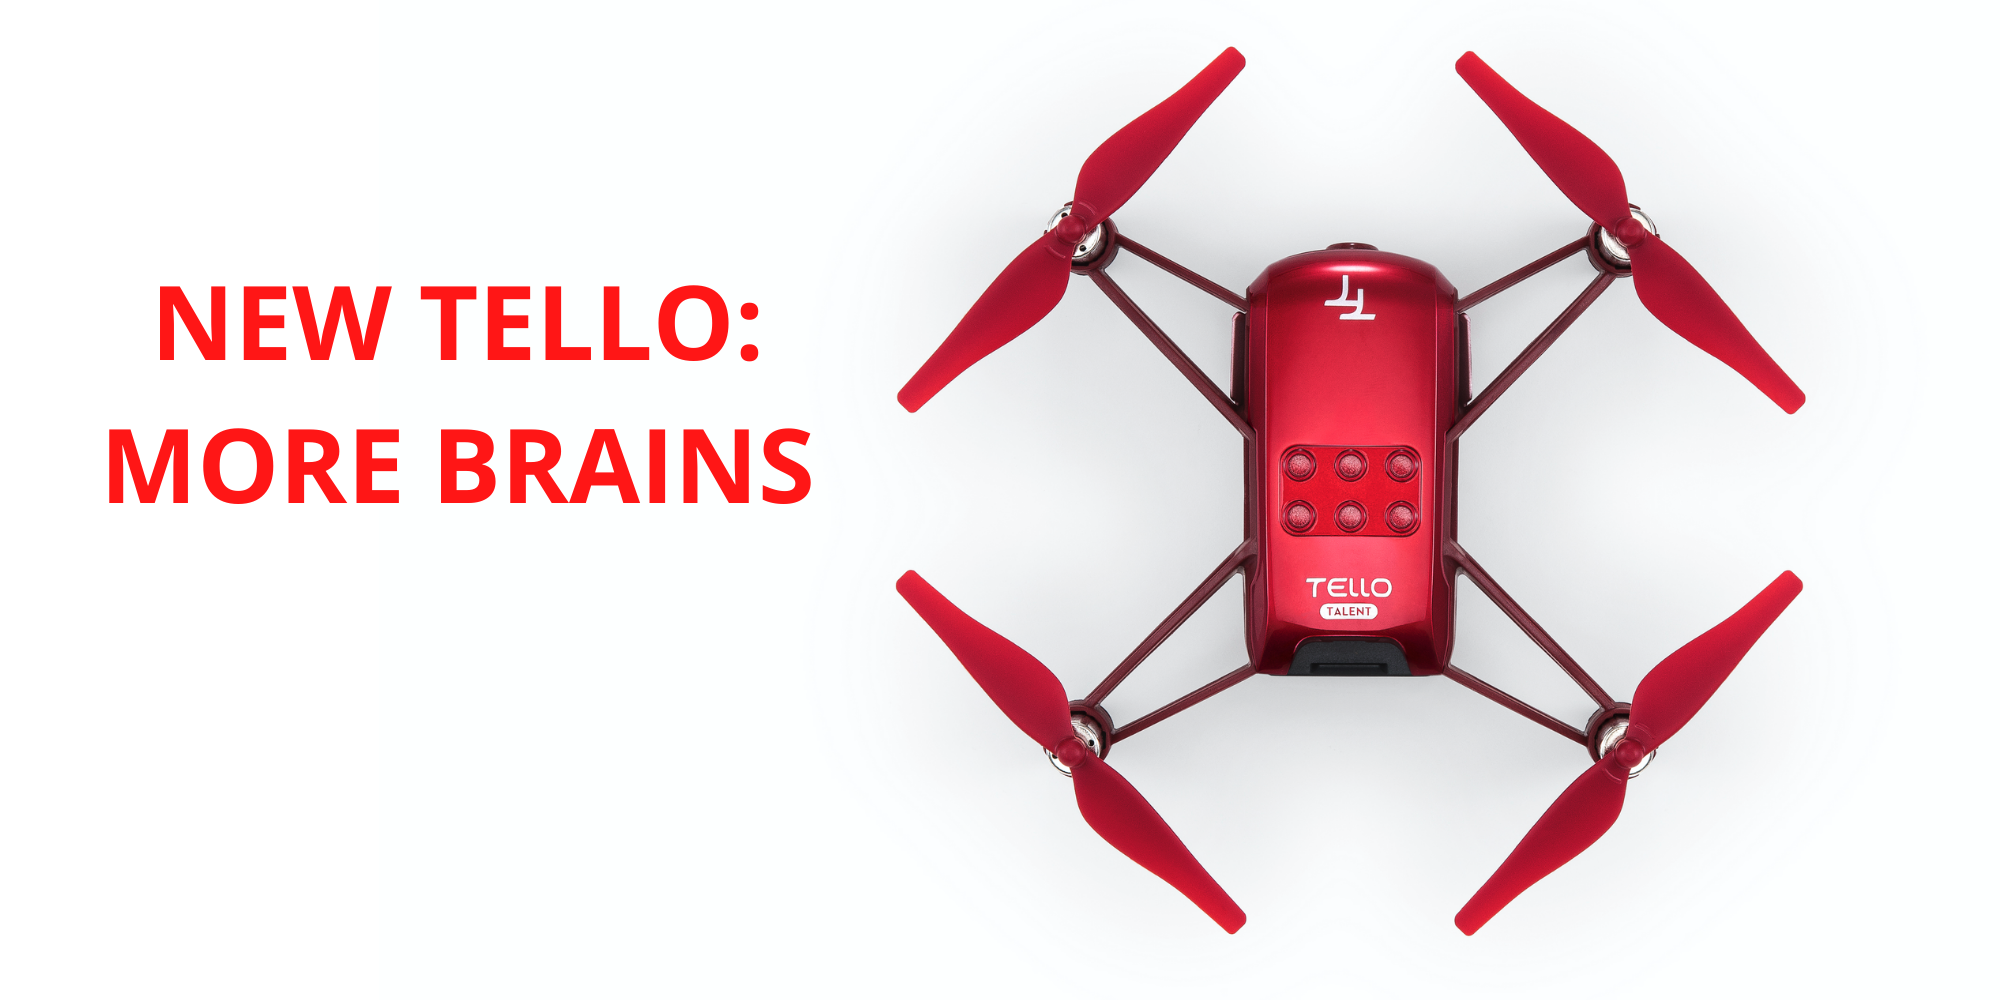 DJI releases more powerful Robomaster Tello Talent Drone - DroneDJ